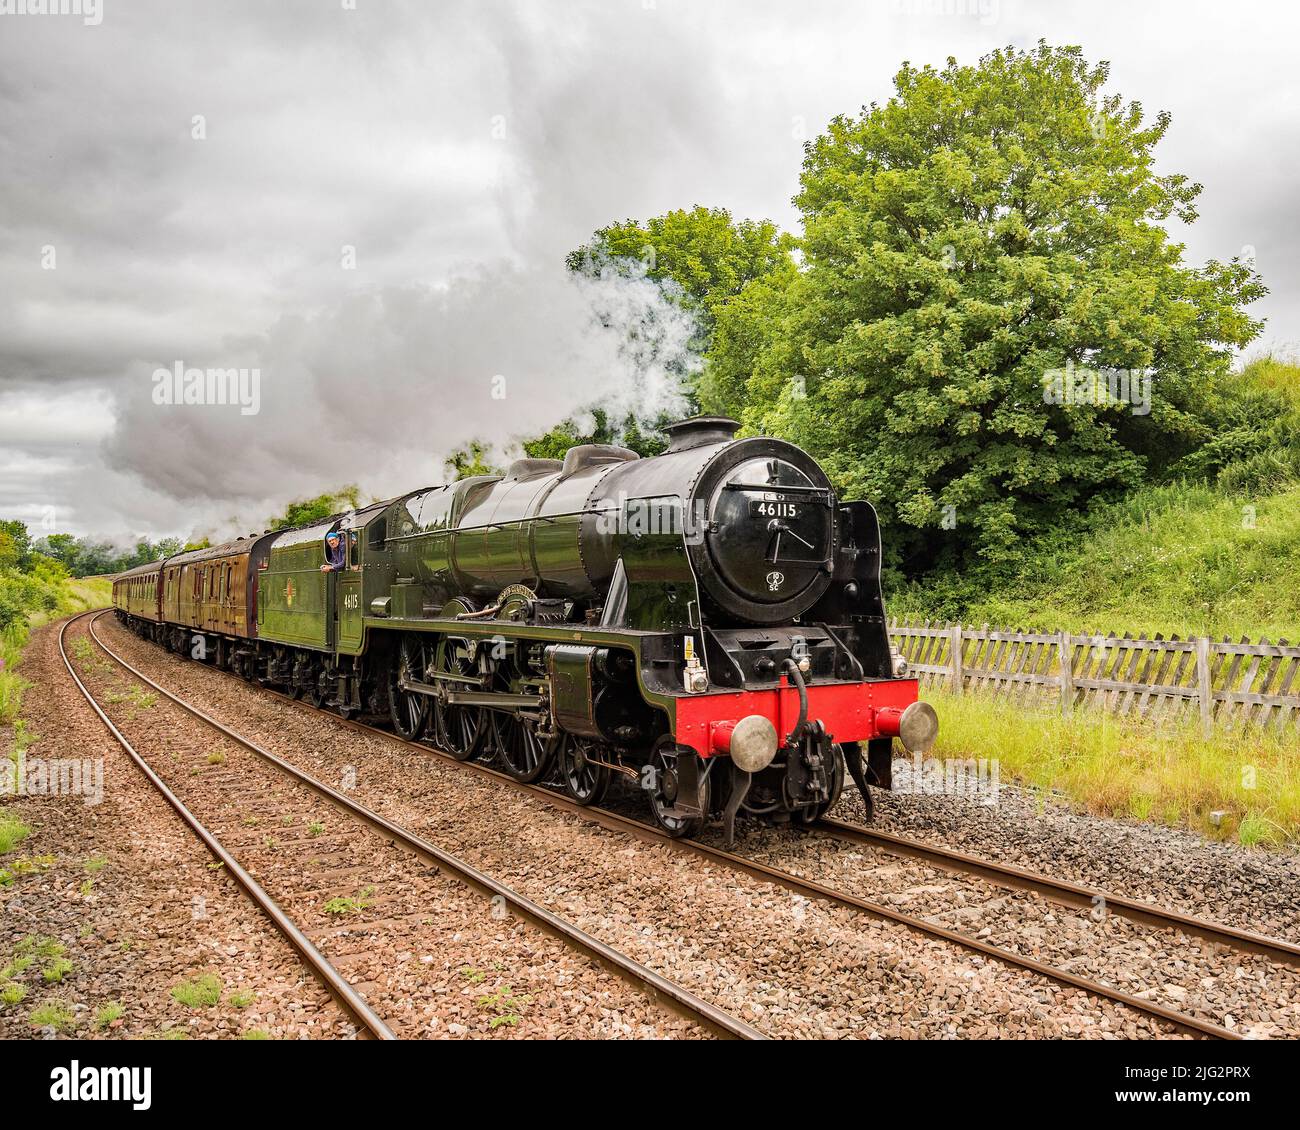 Scarborough Spa Express 7th juillet 2022 avec Scots Guardsman (46115) en train de traverser long Preston, North Yorkshire, sur la ligne Settle & Carlisle. Banque D'Images